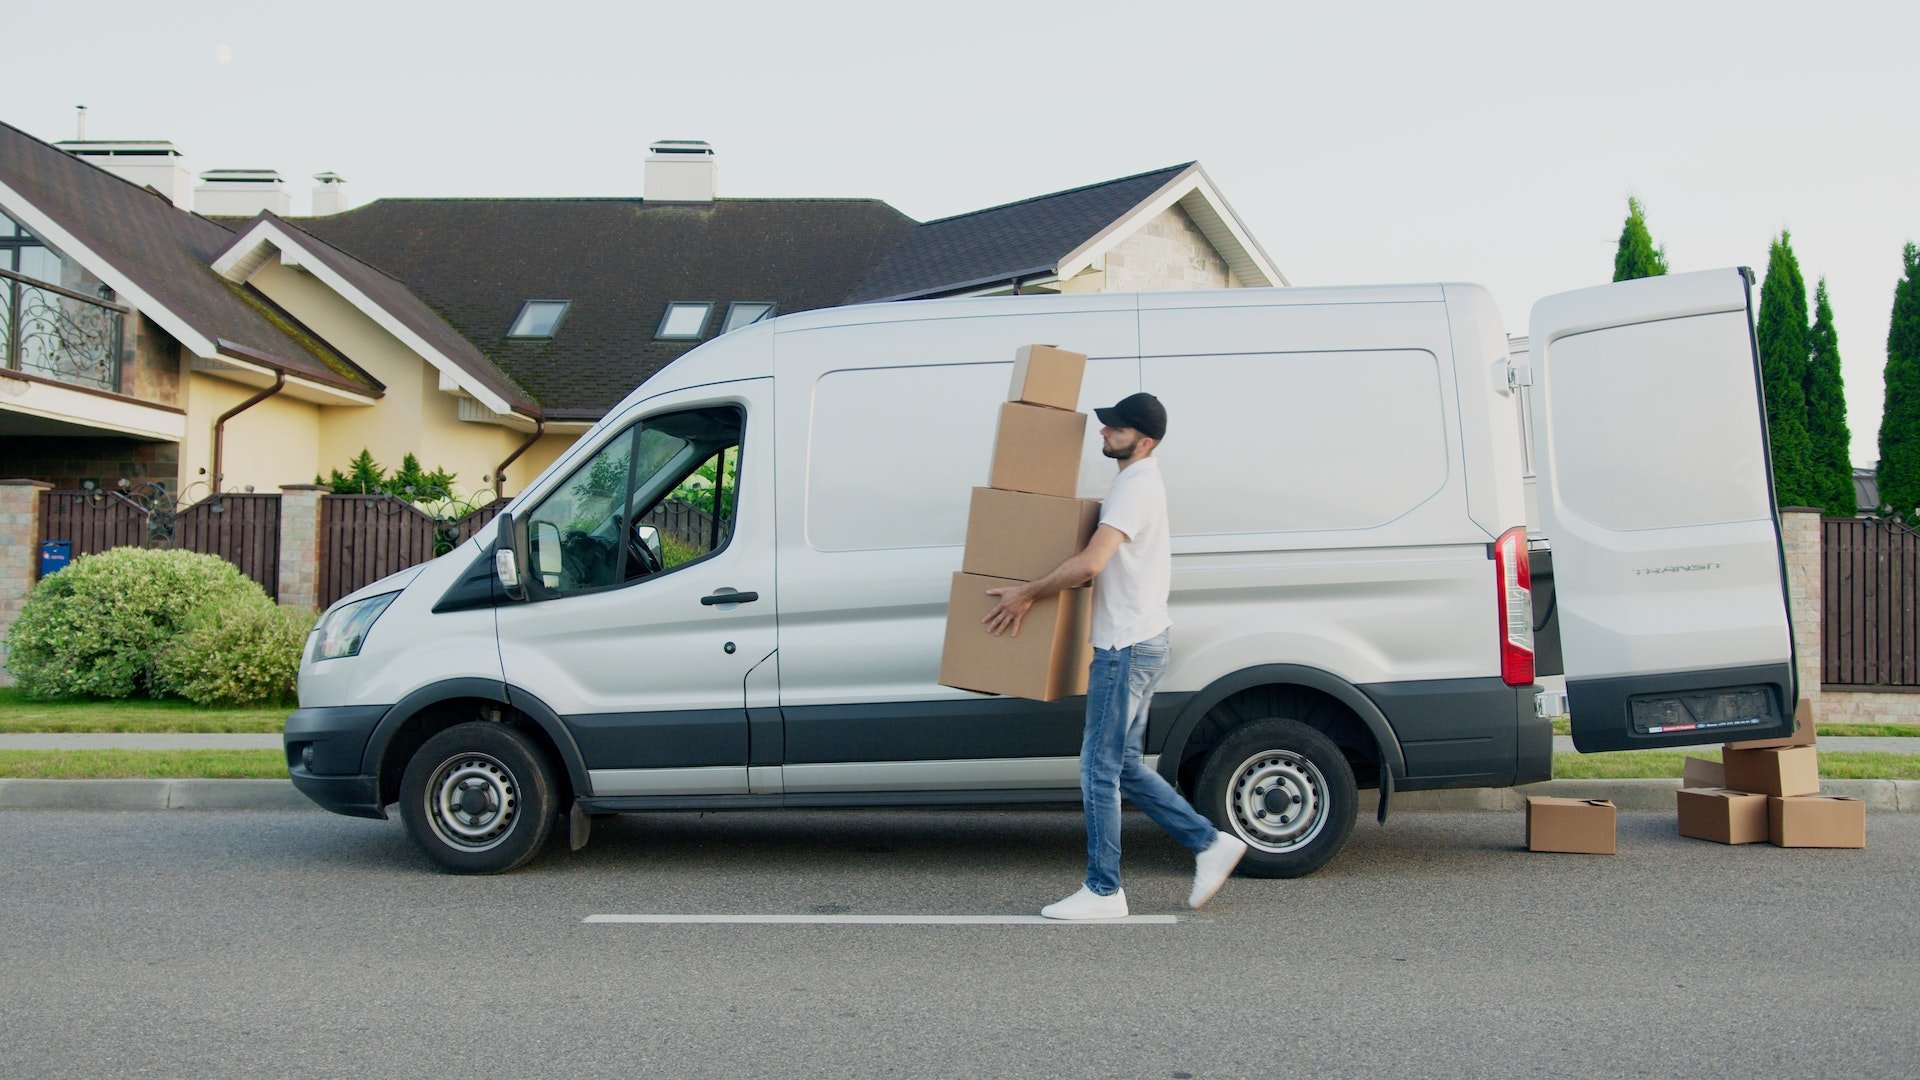 Moving van